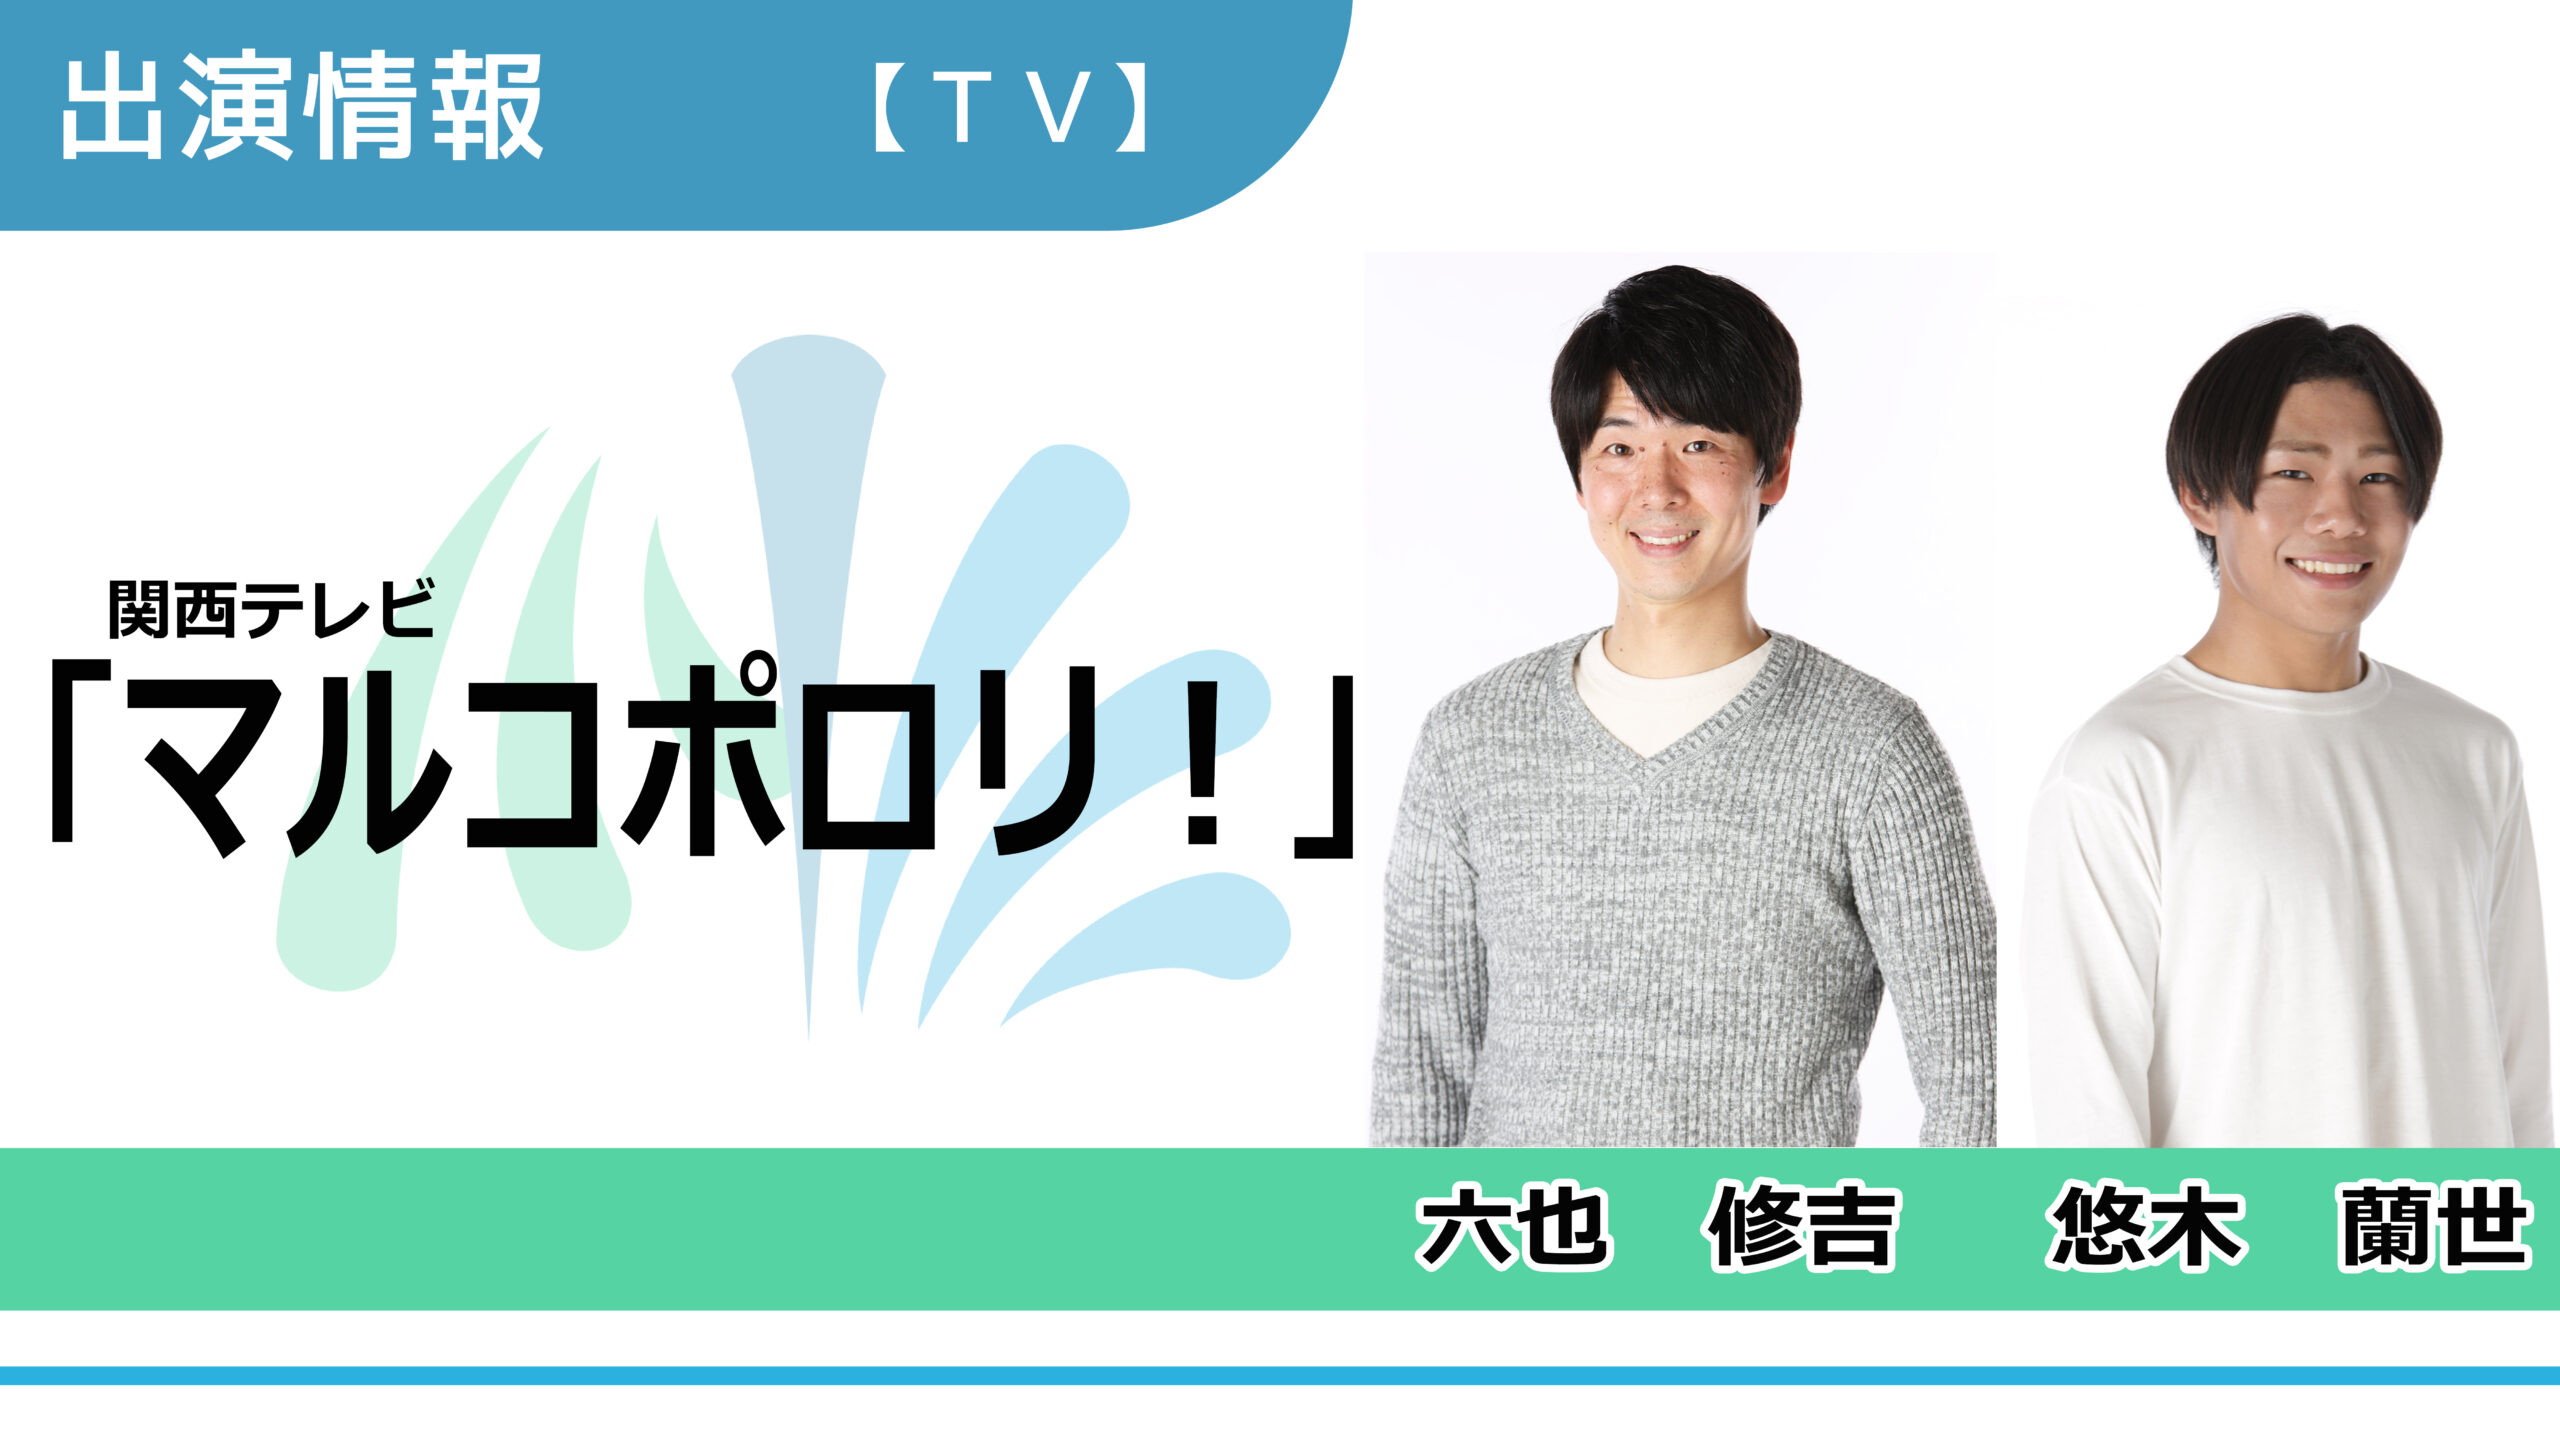 【出演情報】六也修吉、悠木蘭世 / 関西テレビ『マルコポロリ！』再現VTR出演